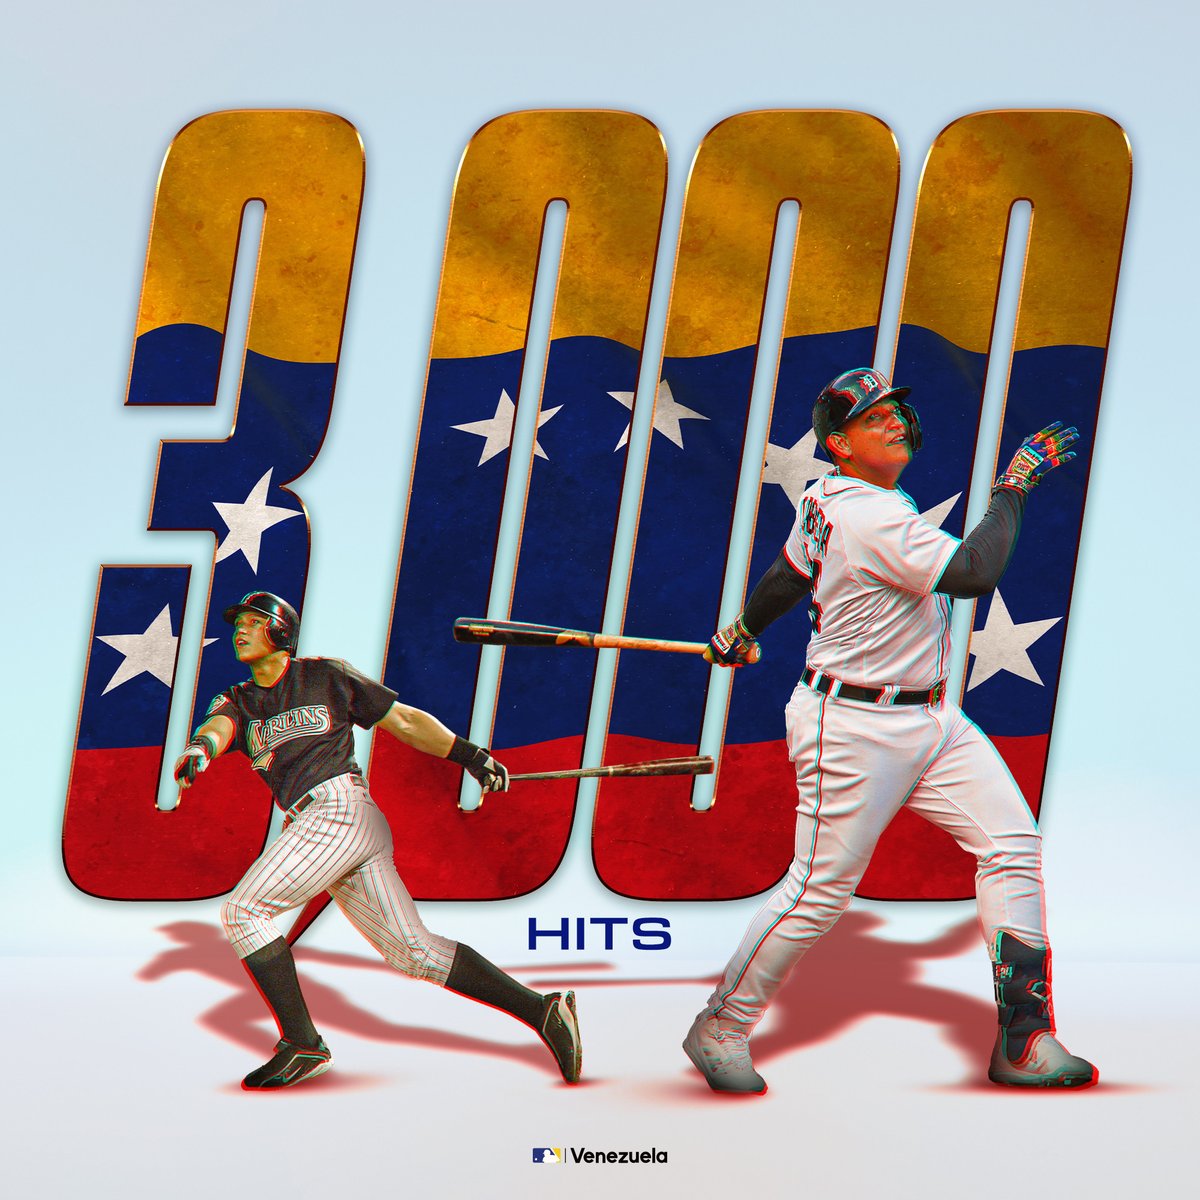 ¡3,000 HITS! 👏 ¡HISTÓRICO! Miguel Cabrera se convierte en el primer venezolano en llegar a dicha cifra en @LasMayores. ¡Felicidades, Miggy! #MLBVenezuela